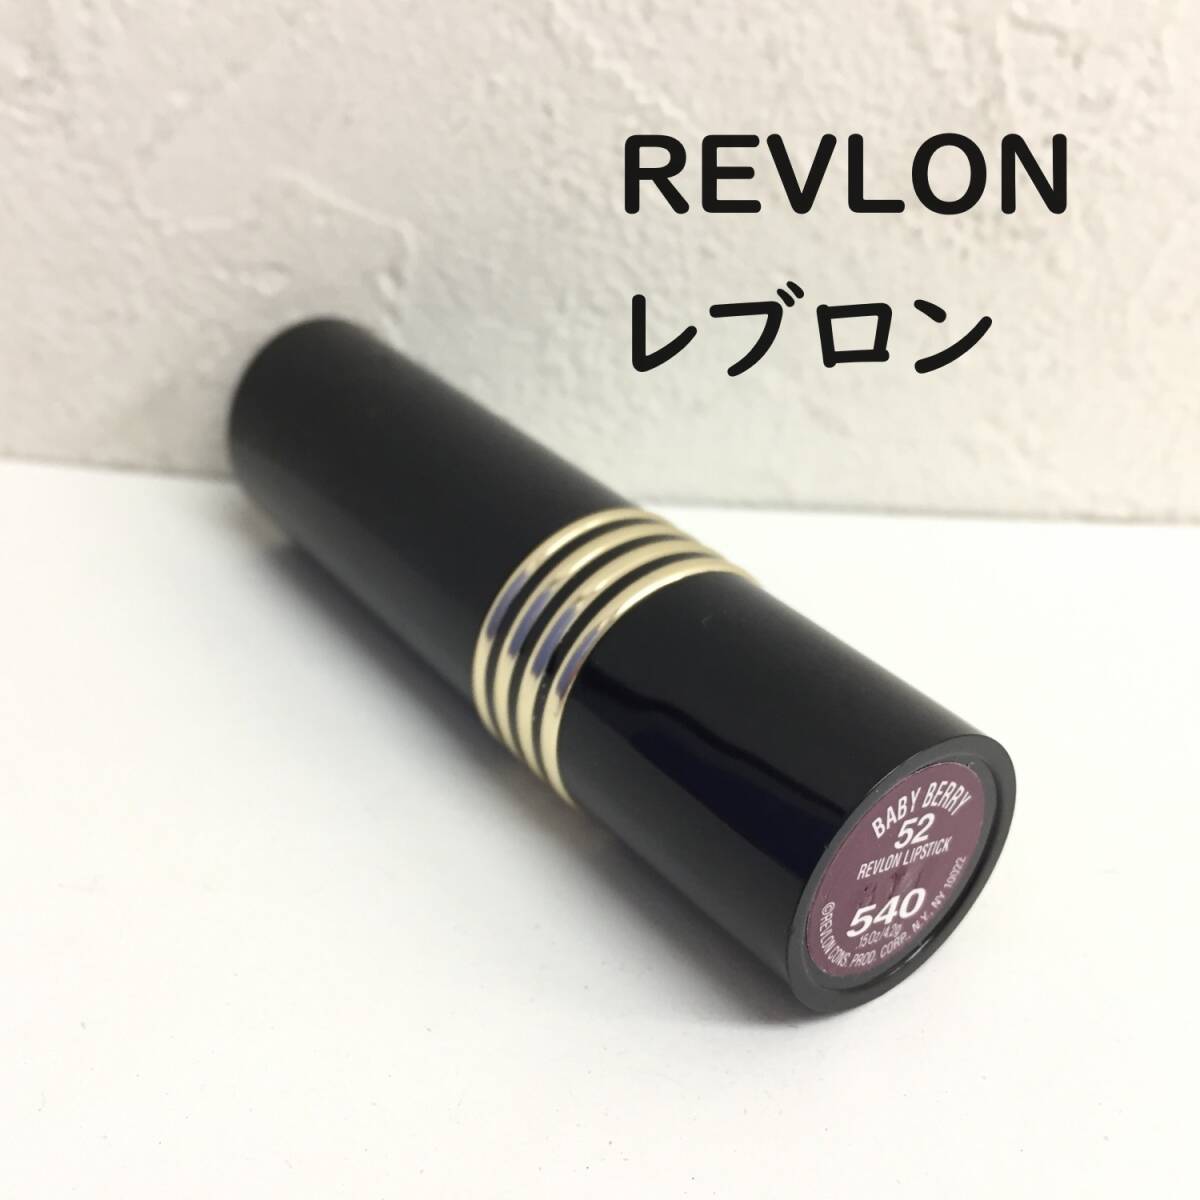 [コスメ] 口紅「REVLON」baby berry 52 revron lipstick 540 レブロン リップ 長期保管品の画像1